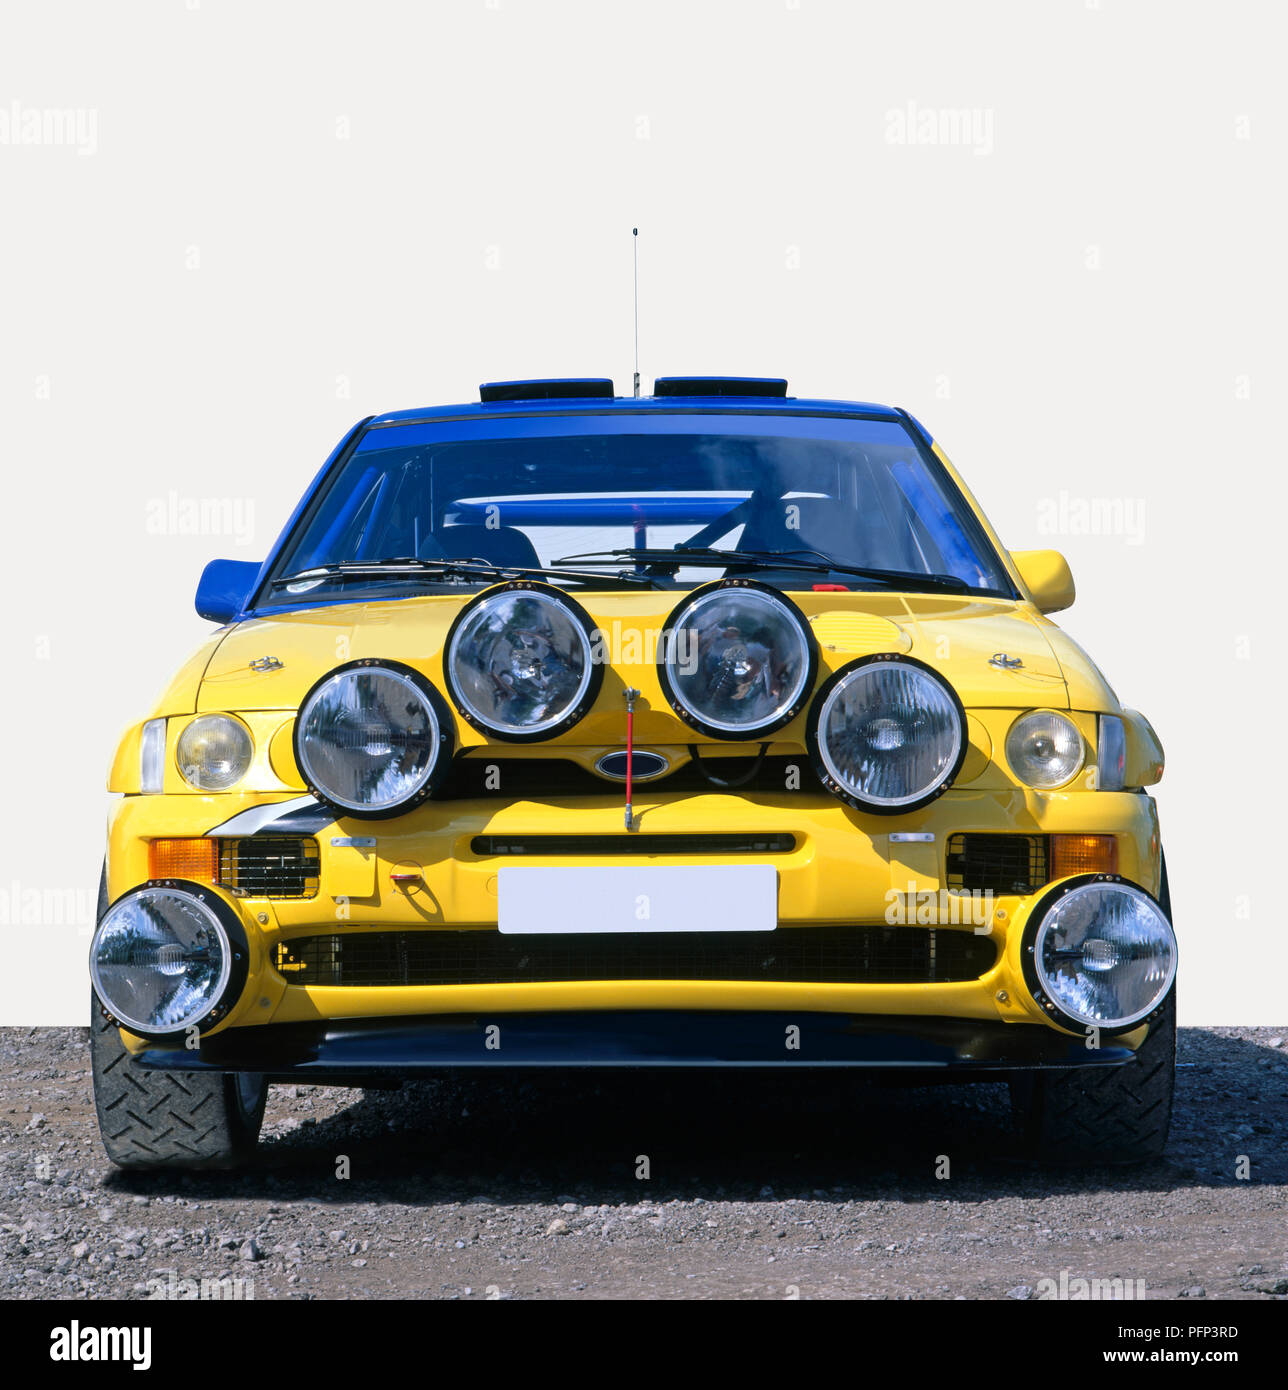 Rallye scheinwerfer -Fotos und -Bildmaterial in hoher Auflösung – Alamy